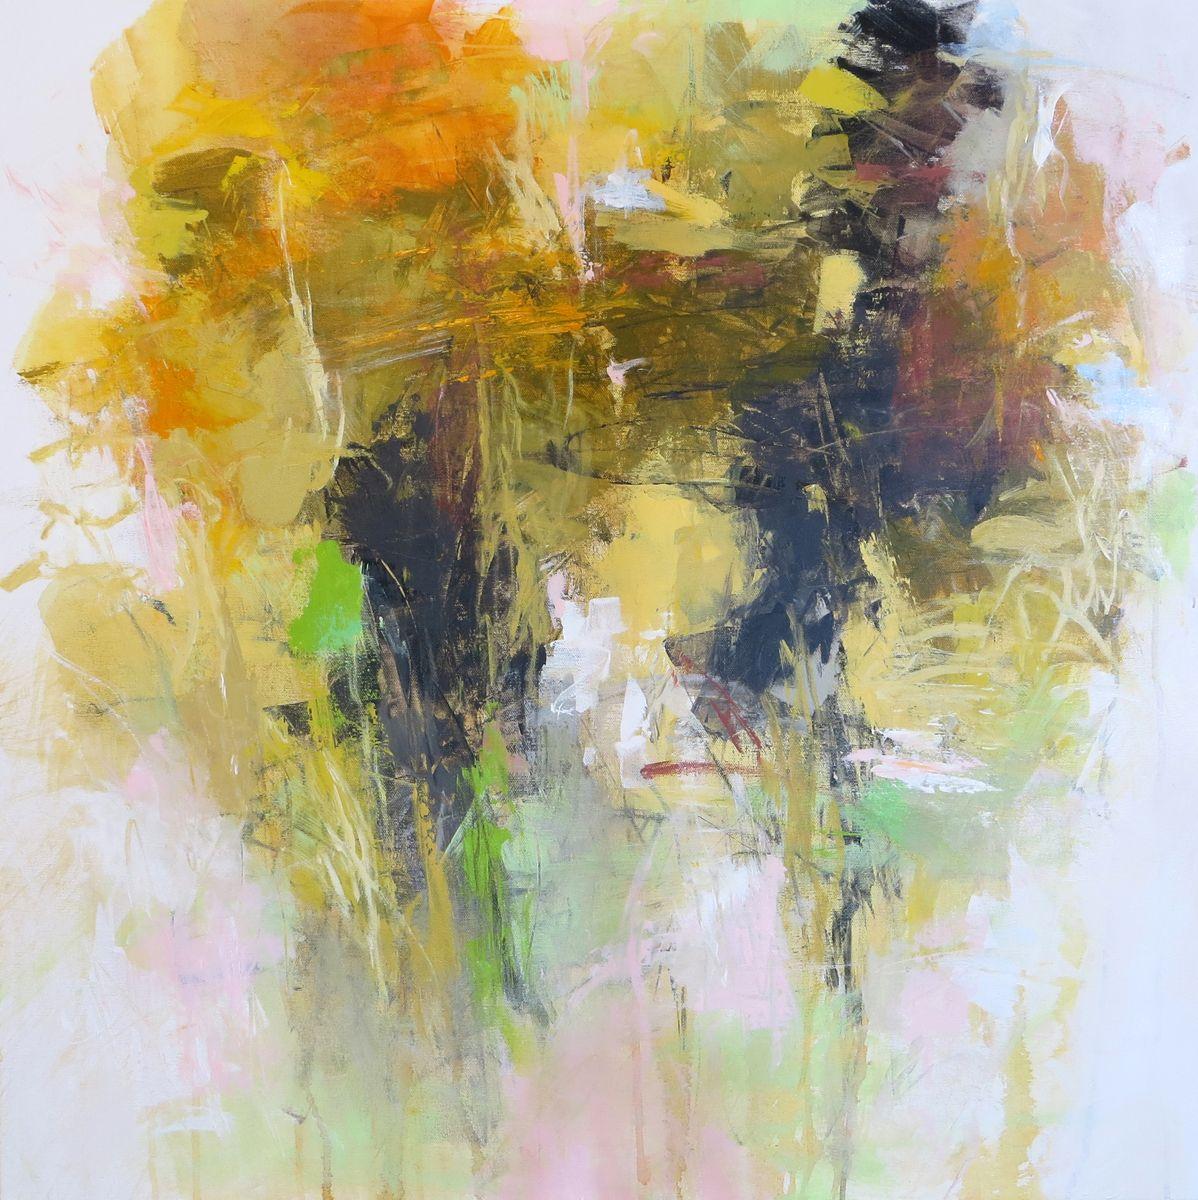 Abstract Painting Debora Stewart - Peinture du matin d'octobre, acrylique sur toile